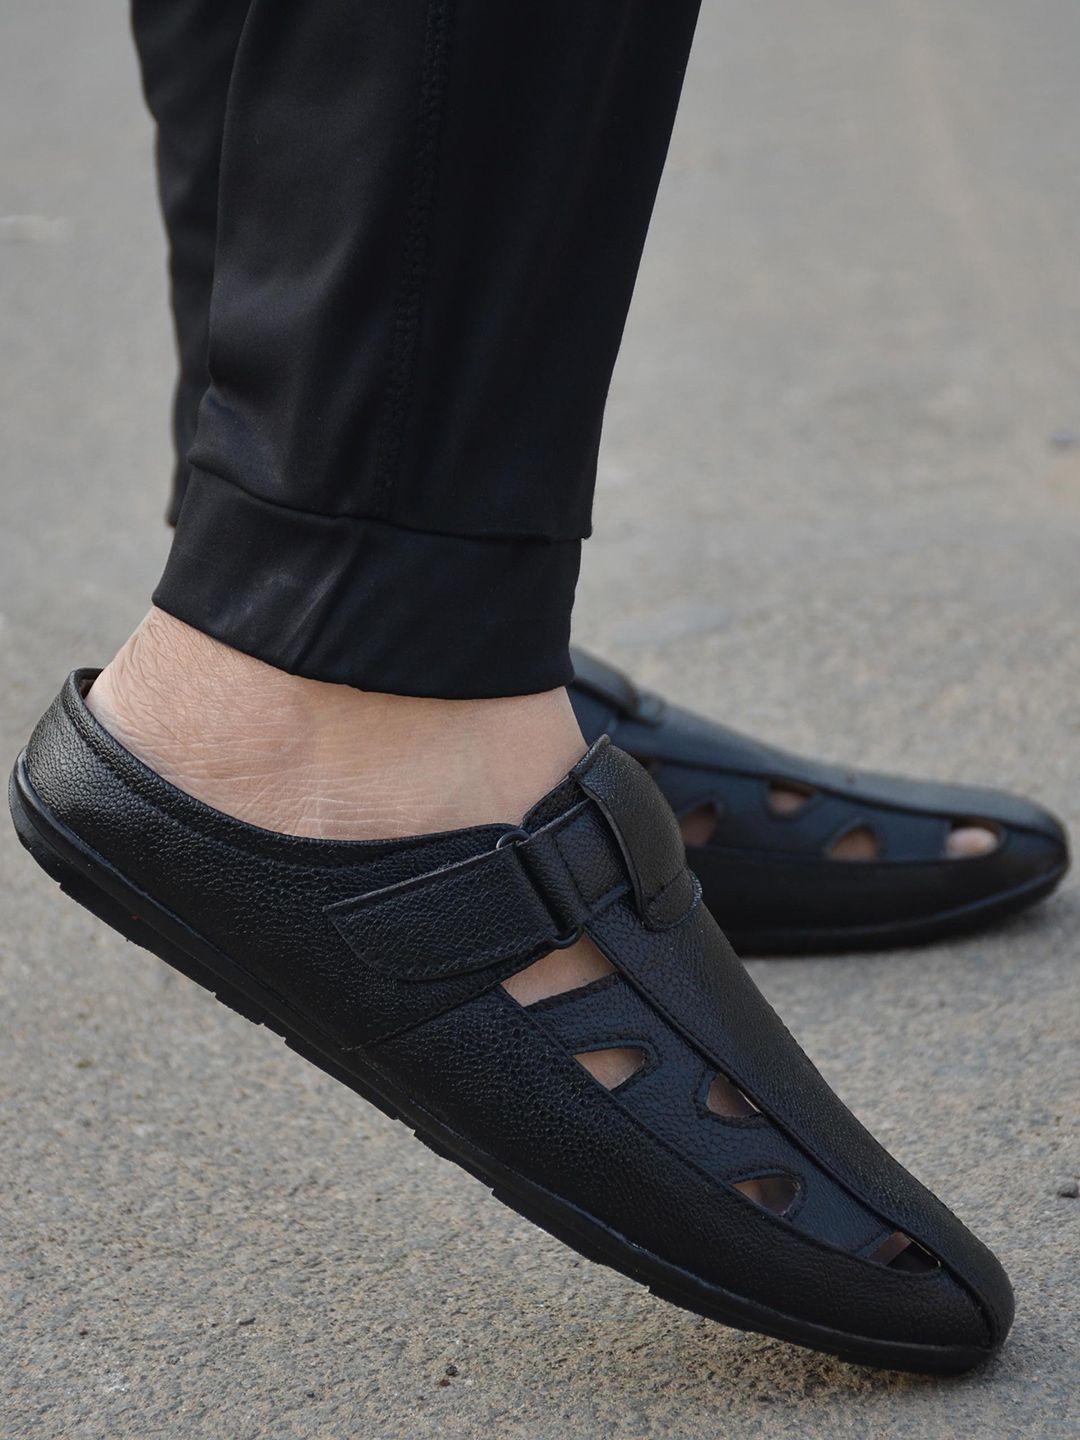 hundo p men black & brown comfort sandals